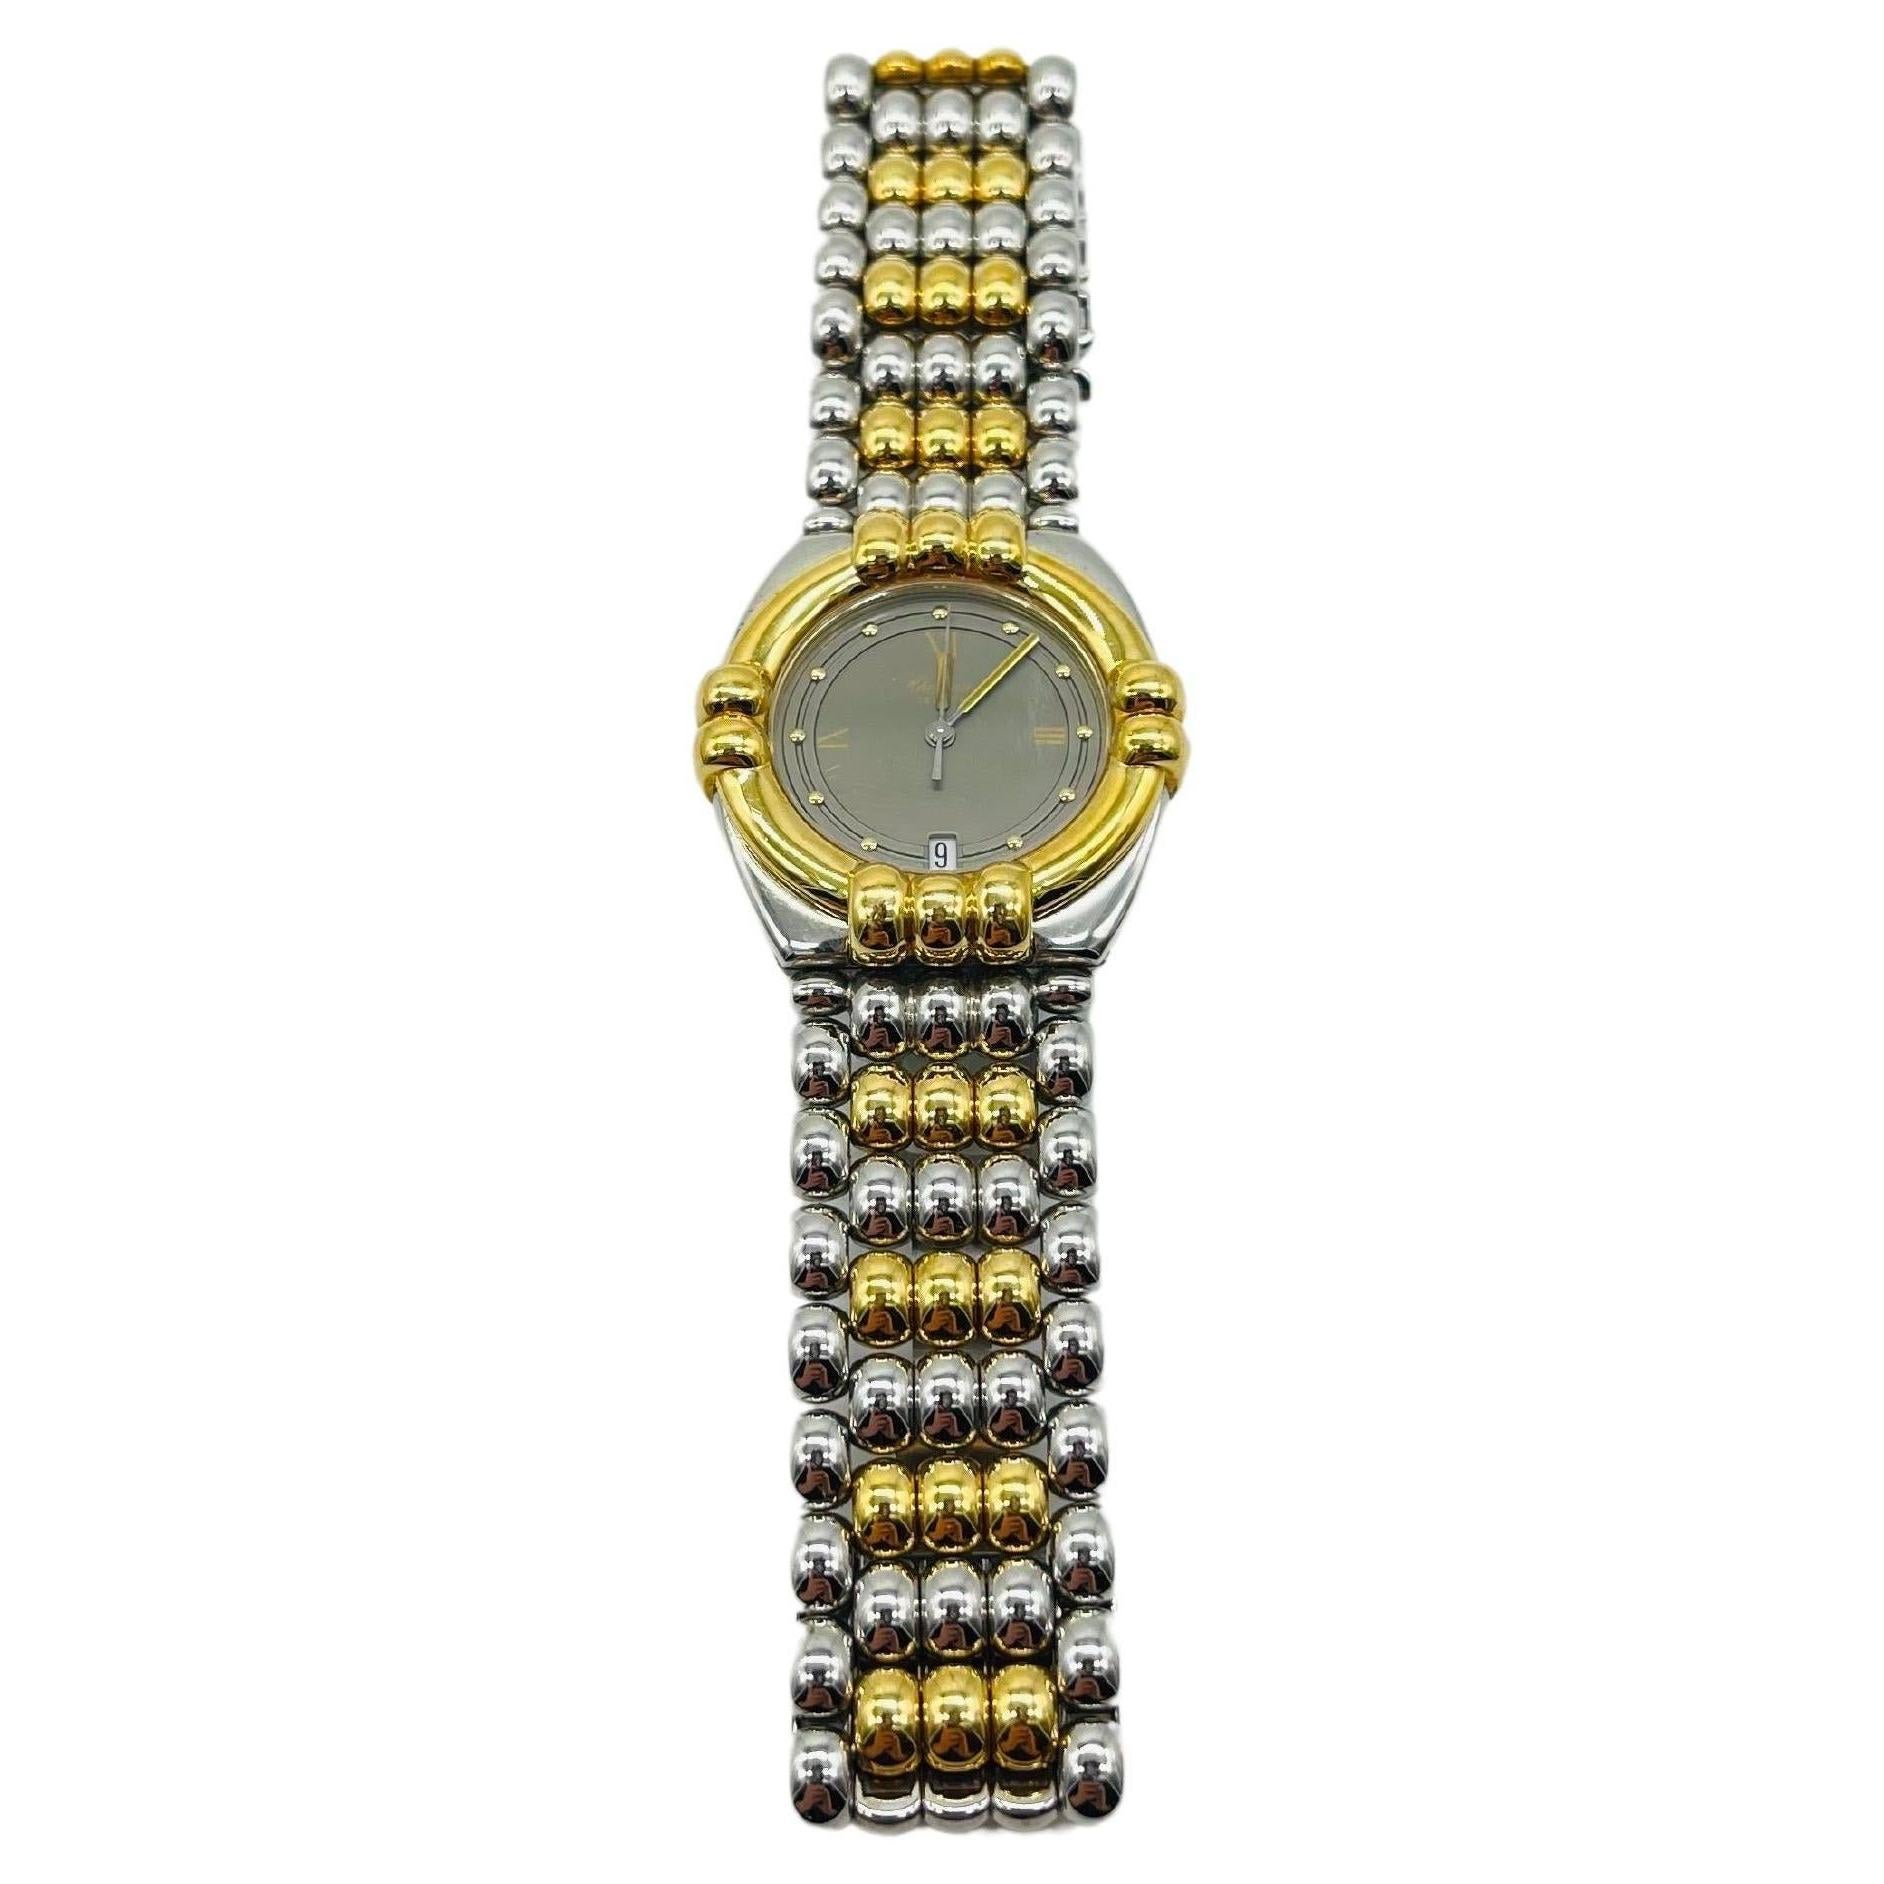 Majestic Chopard genve wrist watch Gstaad 33/8120 For Sale 3